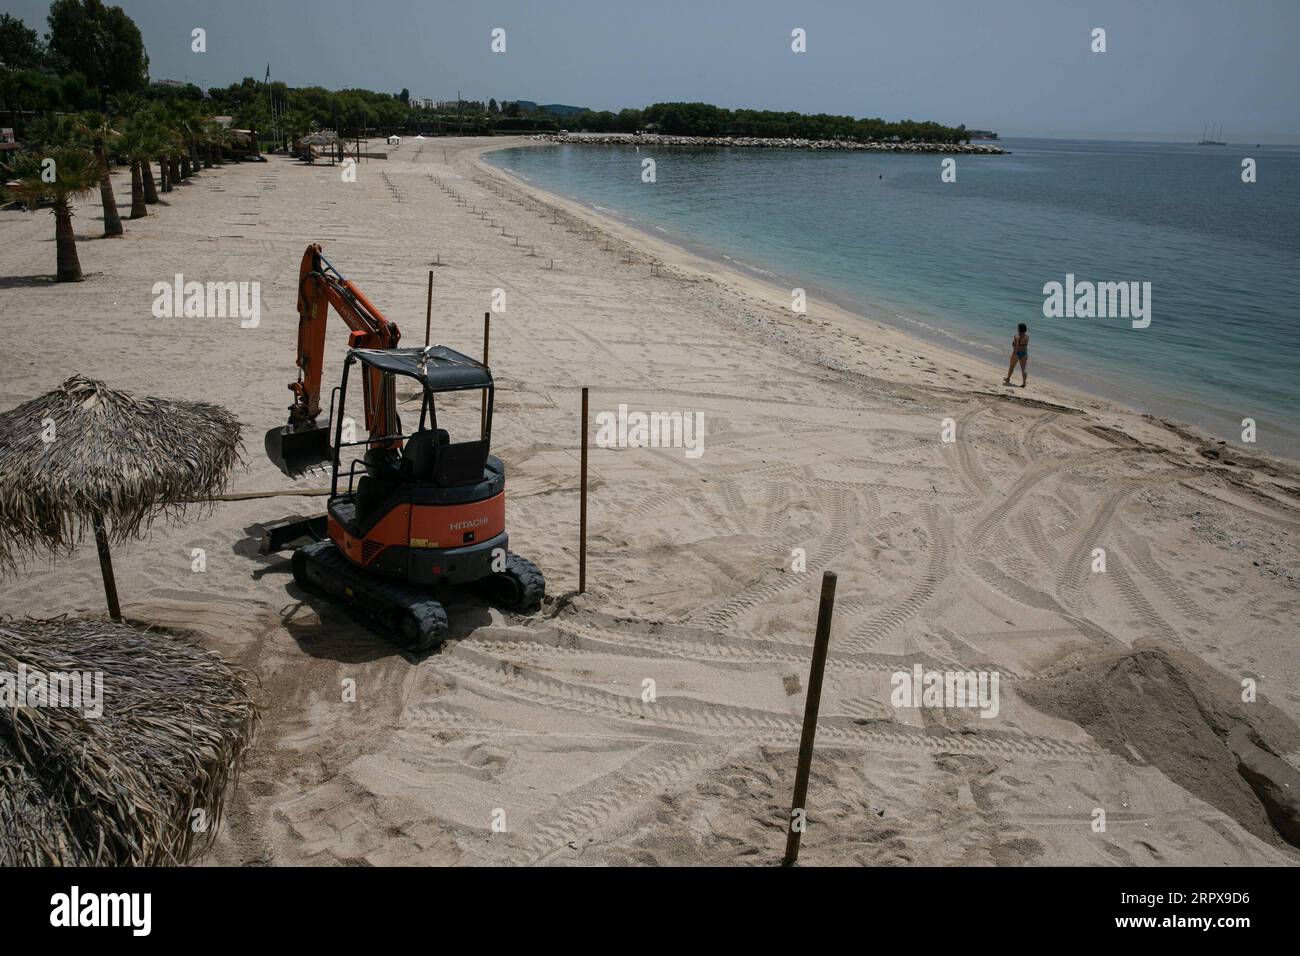 200514 -- ATENE, 14 maggio 2020 Xinhua -- un escavatore scava un buco per un ombrello sulla spiaggia organizzata di Alimos, a sud di Atene, in Grecia, il 14 maggio 2020. Mercoledì i funzionari greci hanno annunciato che a partire dal 16 maggio le 515 spiagge organizzate del paese apriranno sotto restrizioni per evitare il sovraffollamento. Il Ministero della salute greco ha riferito giovedì che il numero di infezioni da COVID-19 ha raggiunto 2.770 e ci sono stati 156 decessi dall'inizio dell'epidemia nel paese il 26 febbraio. Foto di Lefteris Partsalis/Xinhua GREECE-BEACH-REOPENING PUBLICATIONxNOTxINxCHN Foto Stock